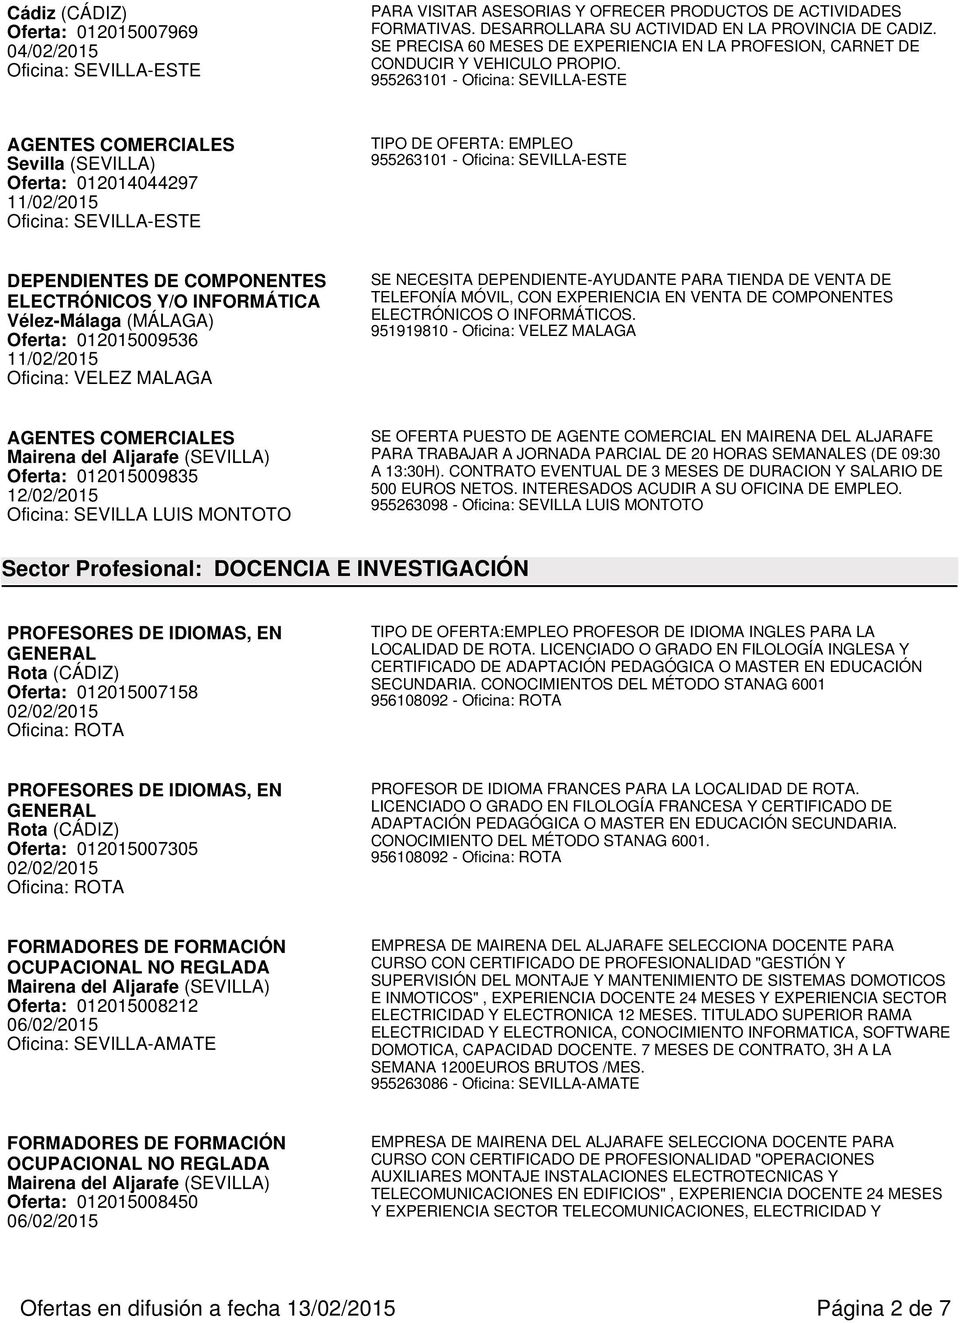 Oferta: 012014044297 DEPENDIENTES DE COMPONENTES ELECTRÓNICOS Y/O INFORMÁTICA Vélez-Málaga (MÁLAGA) Oferta: 012015009536 Oficina: VELEZ MALAGA SE NECESITA DEPENDIENTE-AYUDANTE PARA TIENDA DE VENTA DE